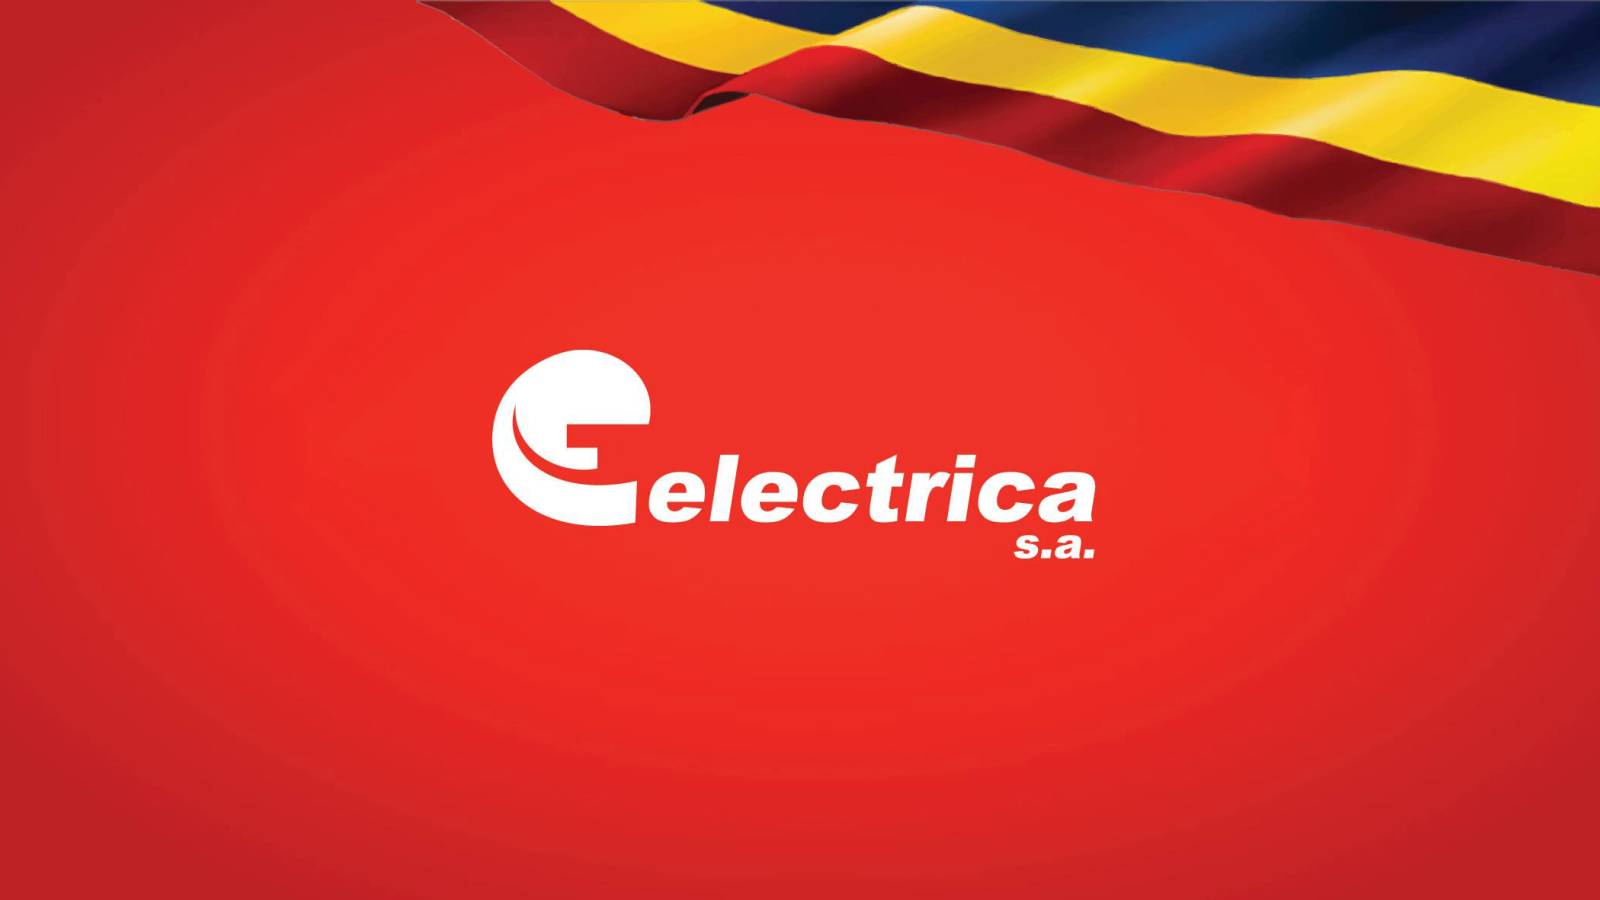 Oficjalne informacje Electrica WAŻNE Działania LAST MINUTE skierowane do klientów rumuńskich